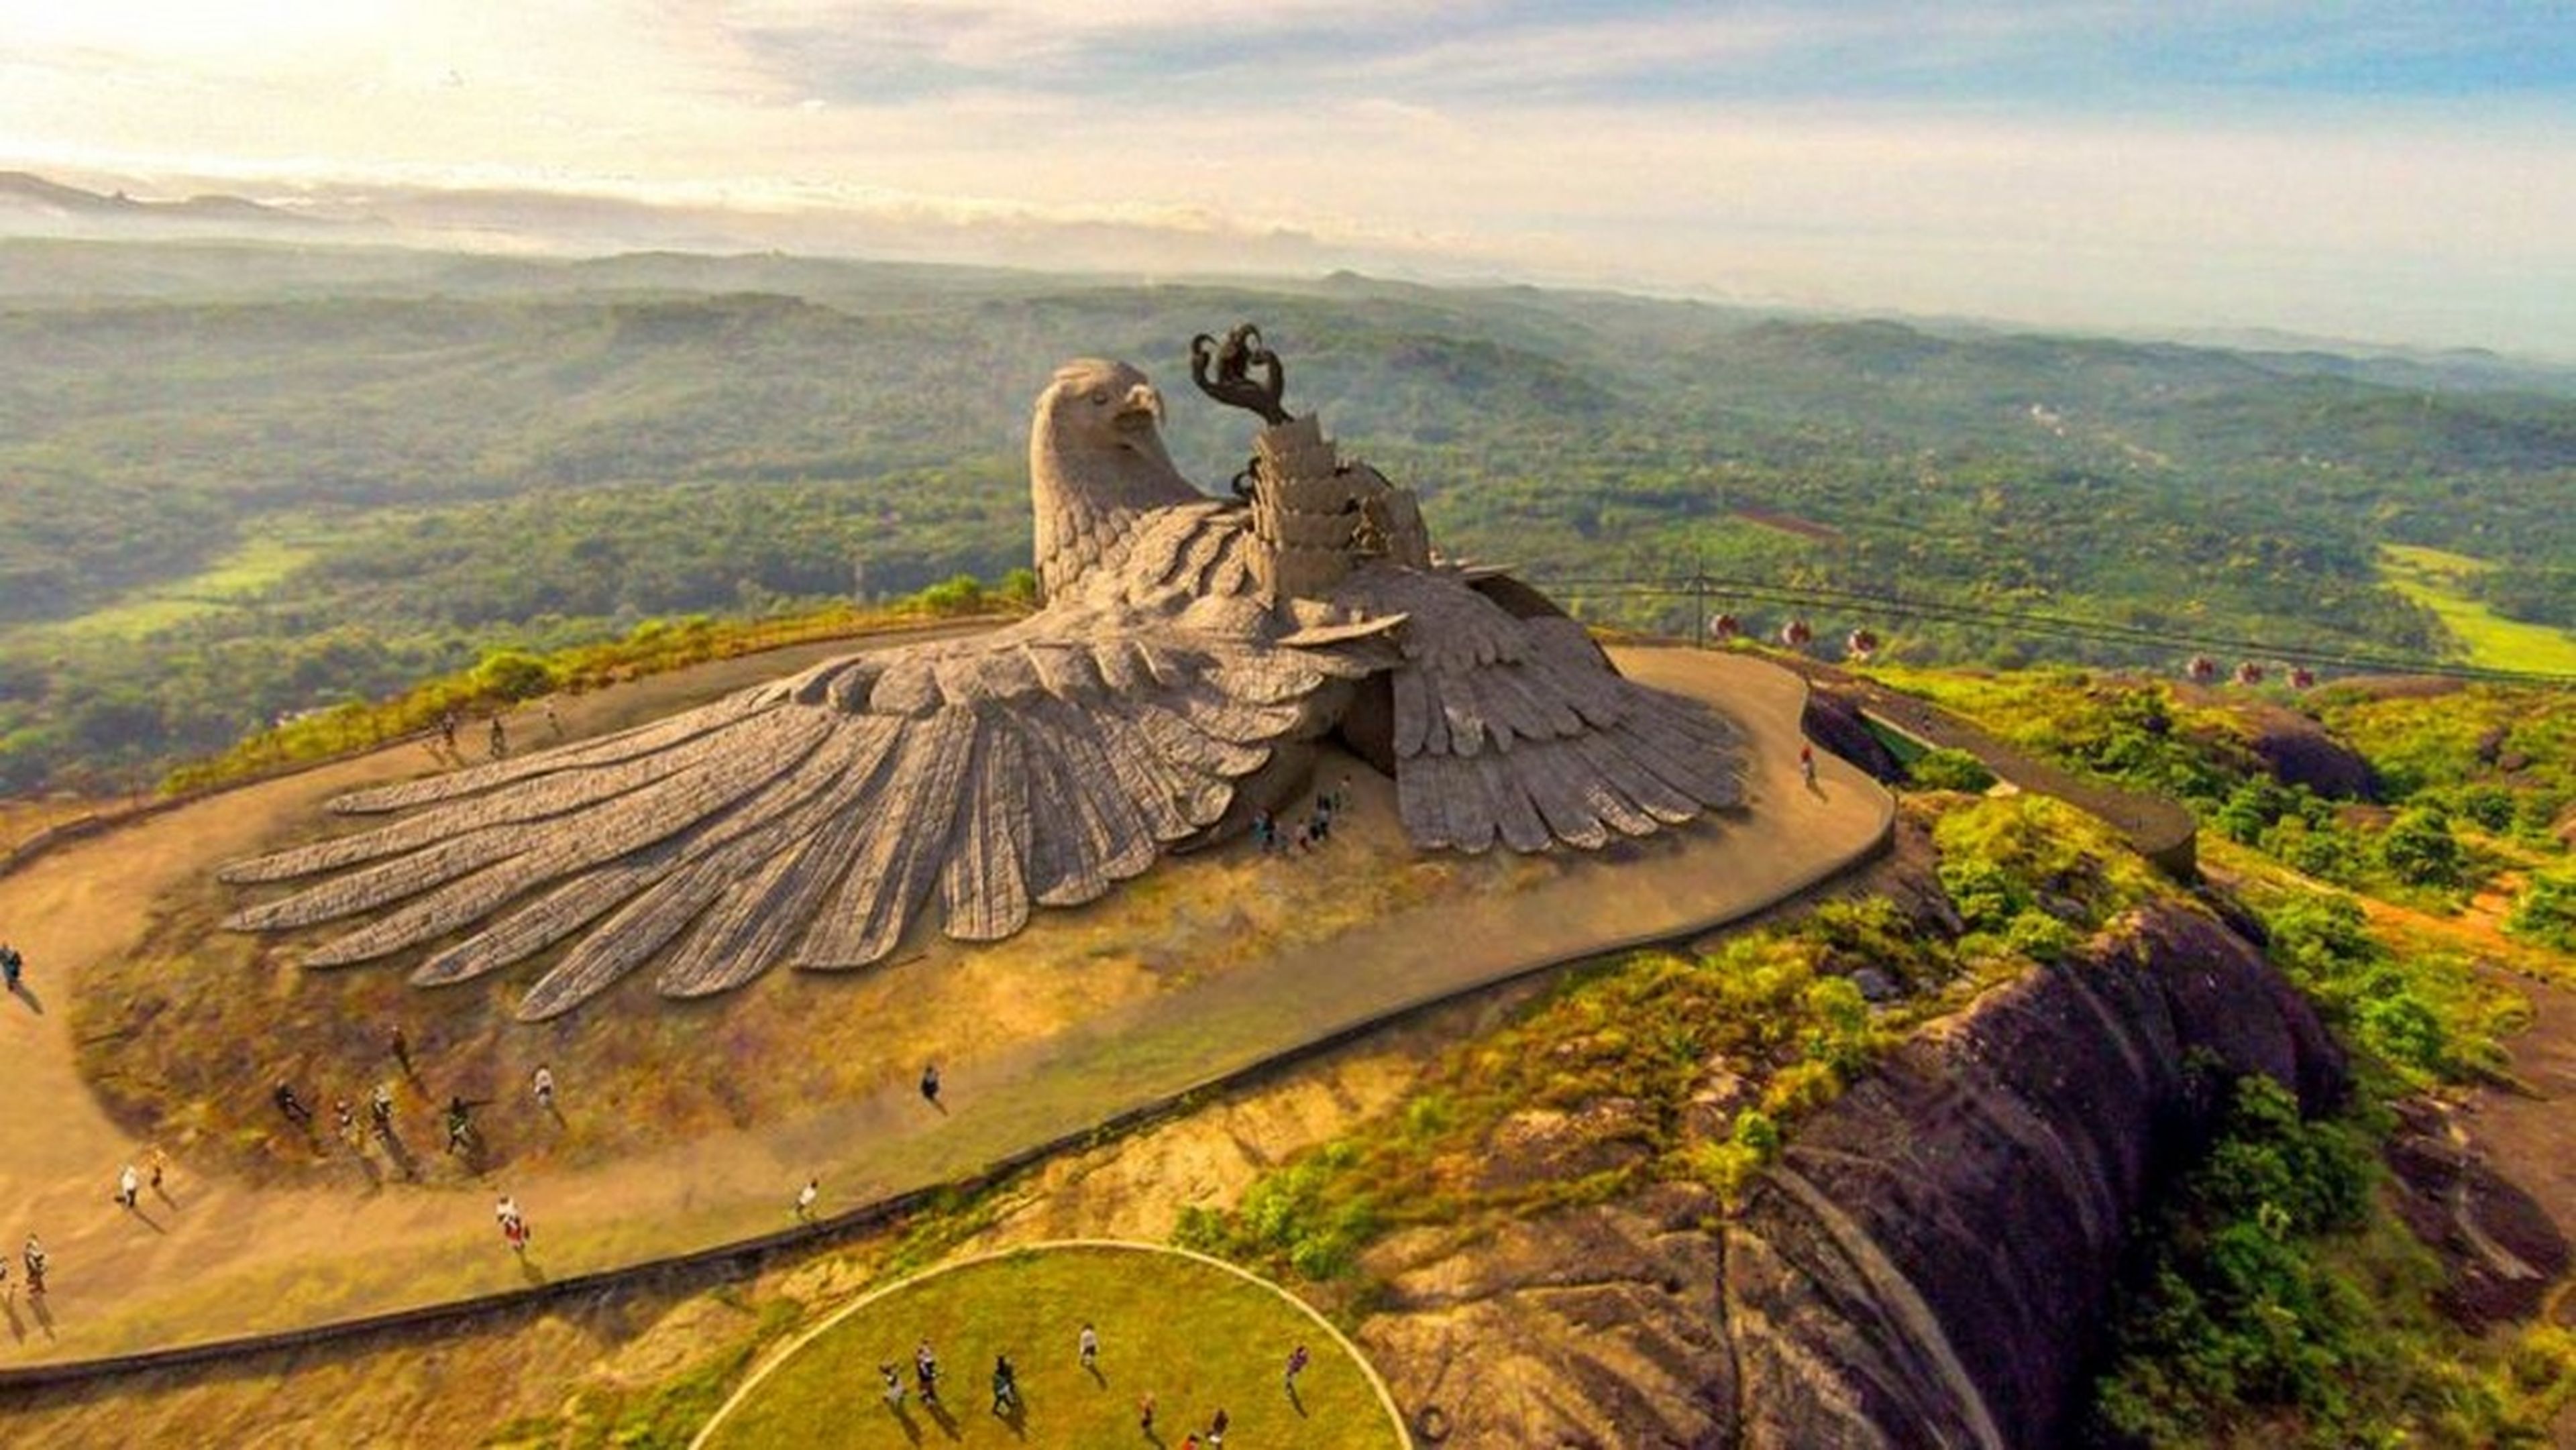 La estatua de pájaro más grande del mundo, ¿por qué es un águila caída?